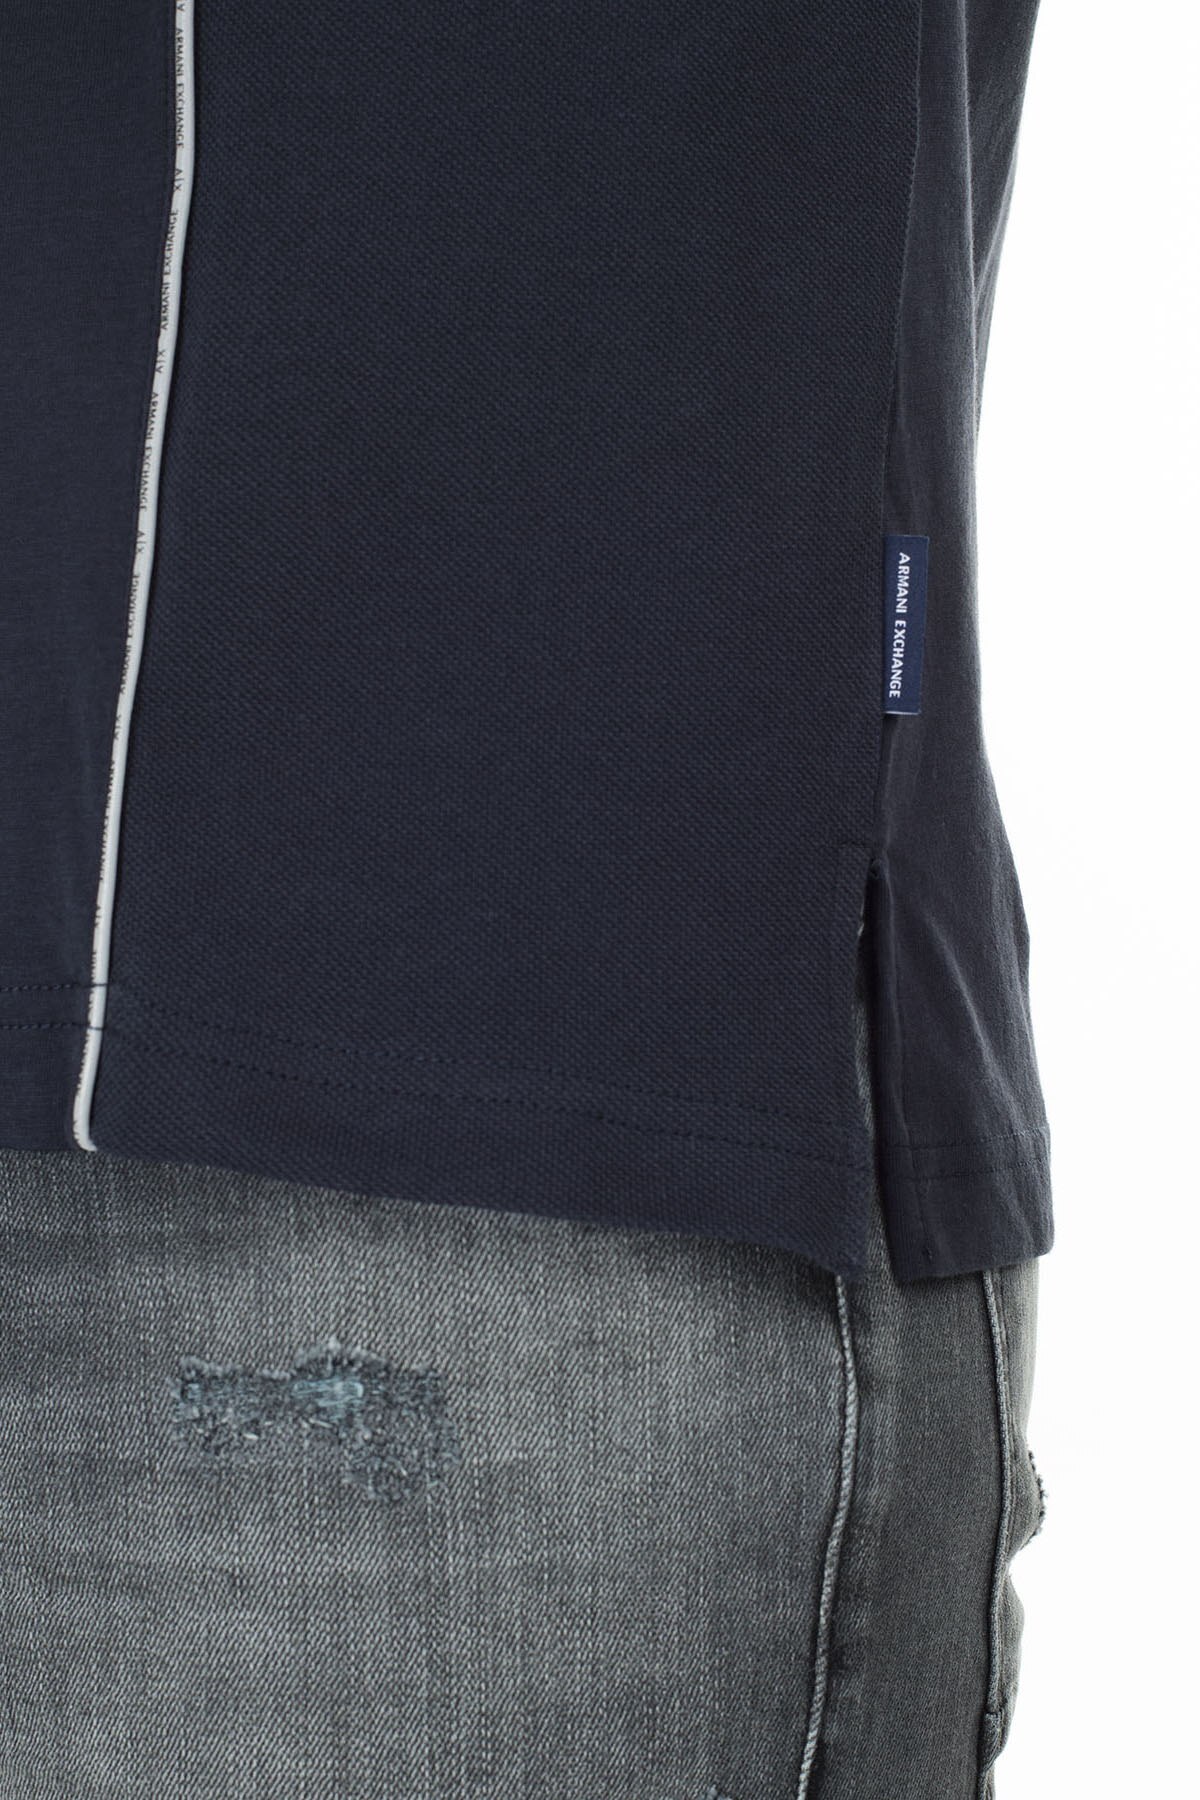 Armani Exchange Logo Baskılı Regular Fit Düğmeli T Shirt Erkek Polo 3HZFGA ZJH4Z 1510 LACİVERT